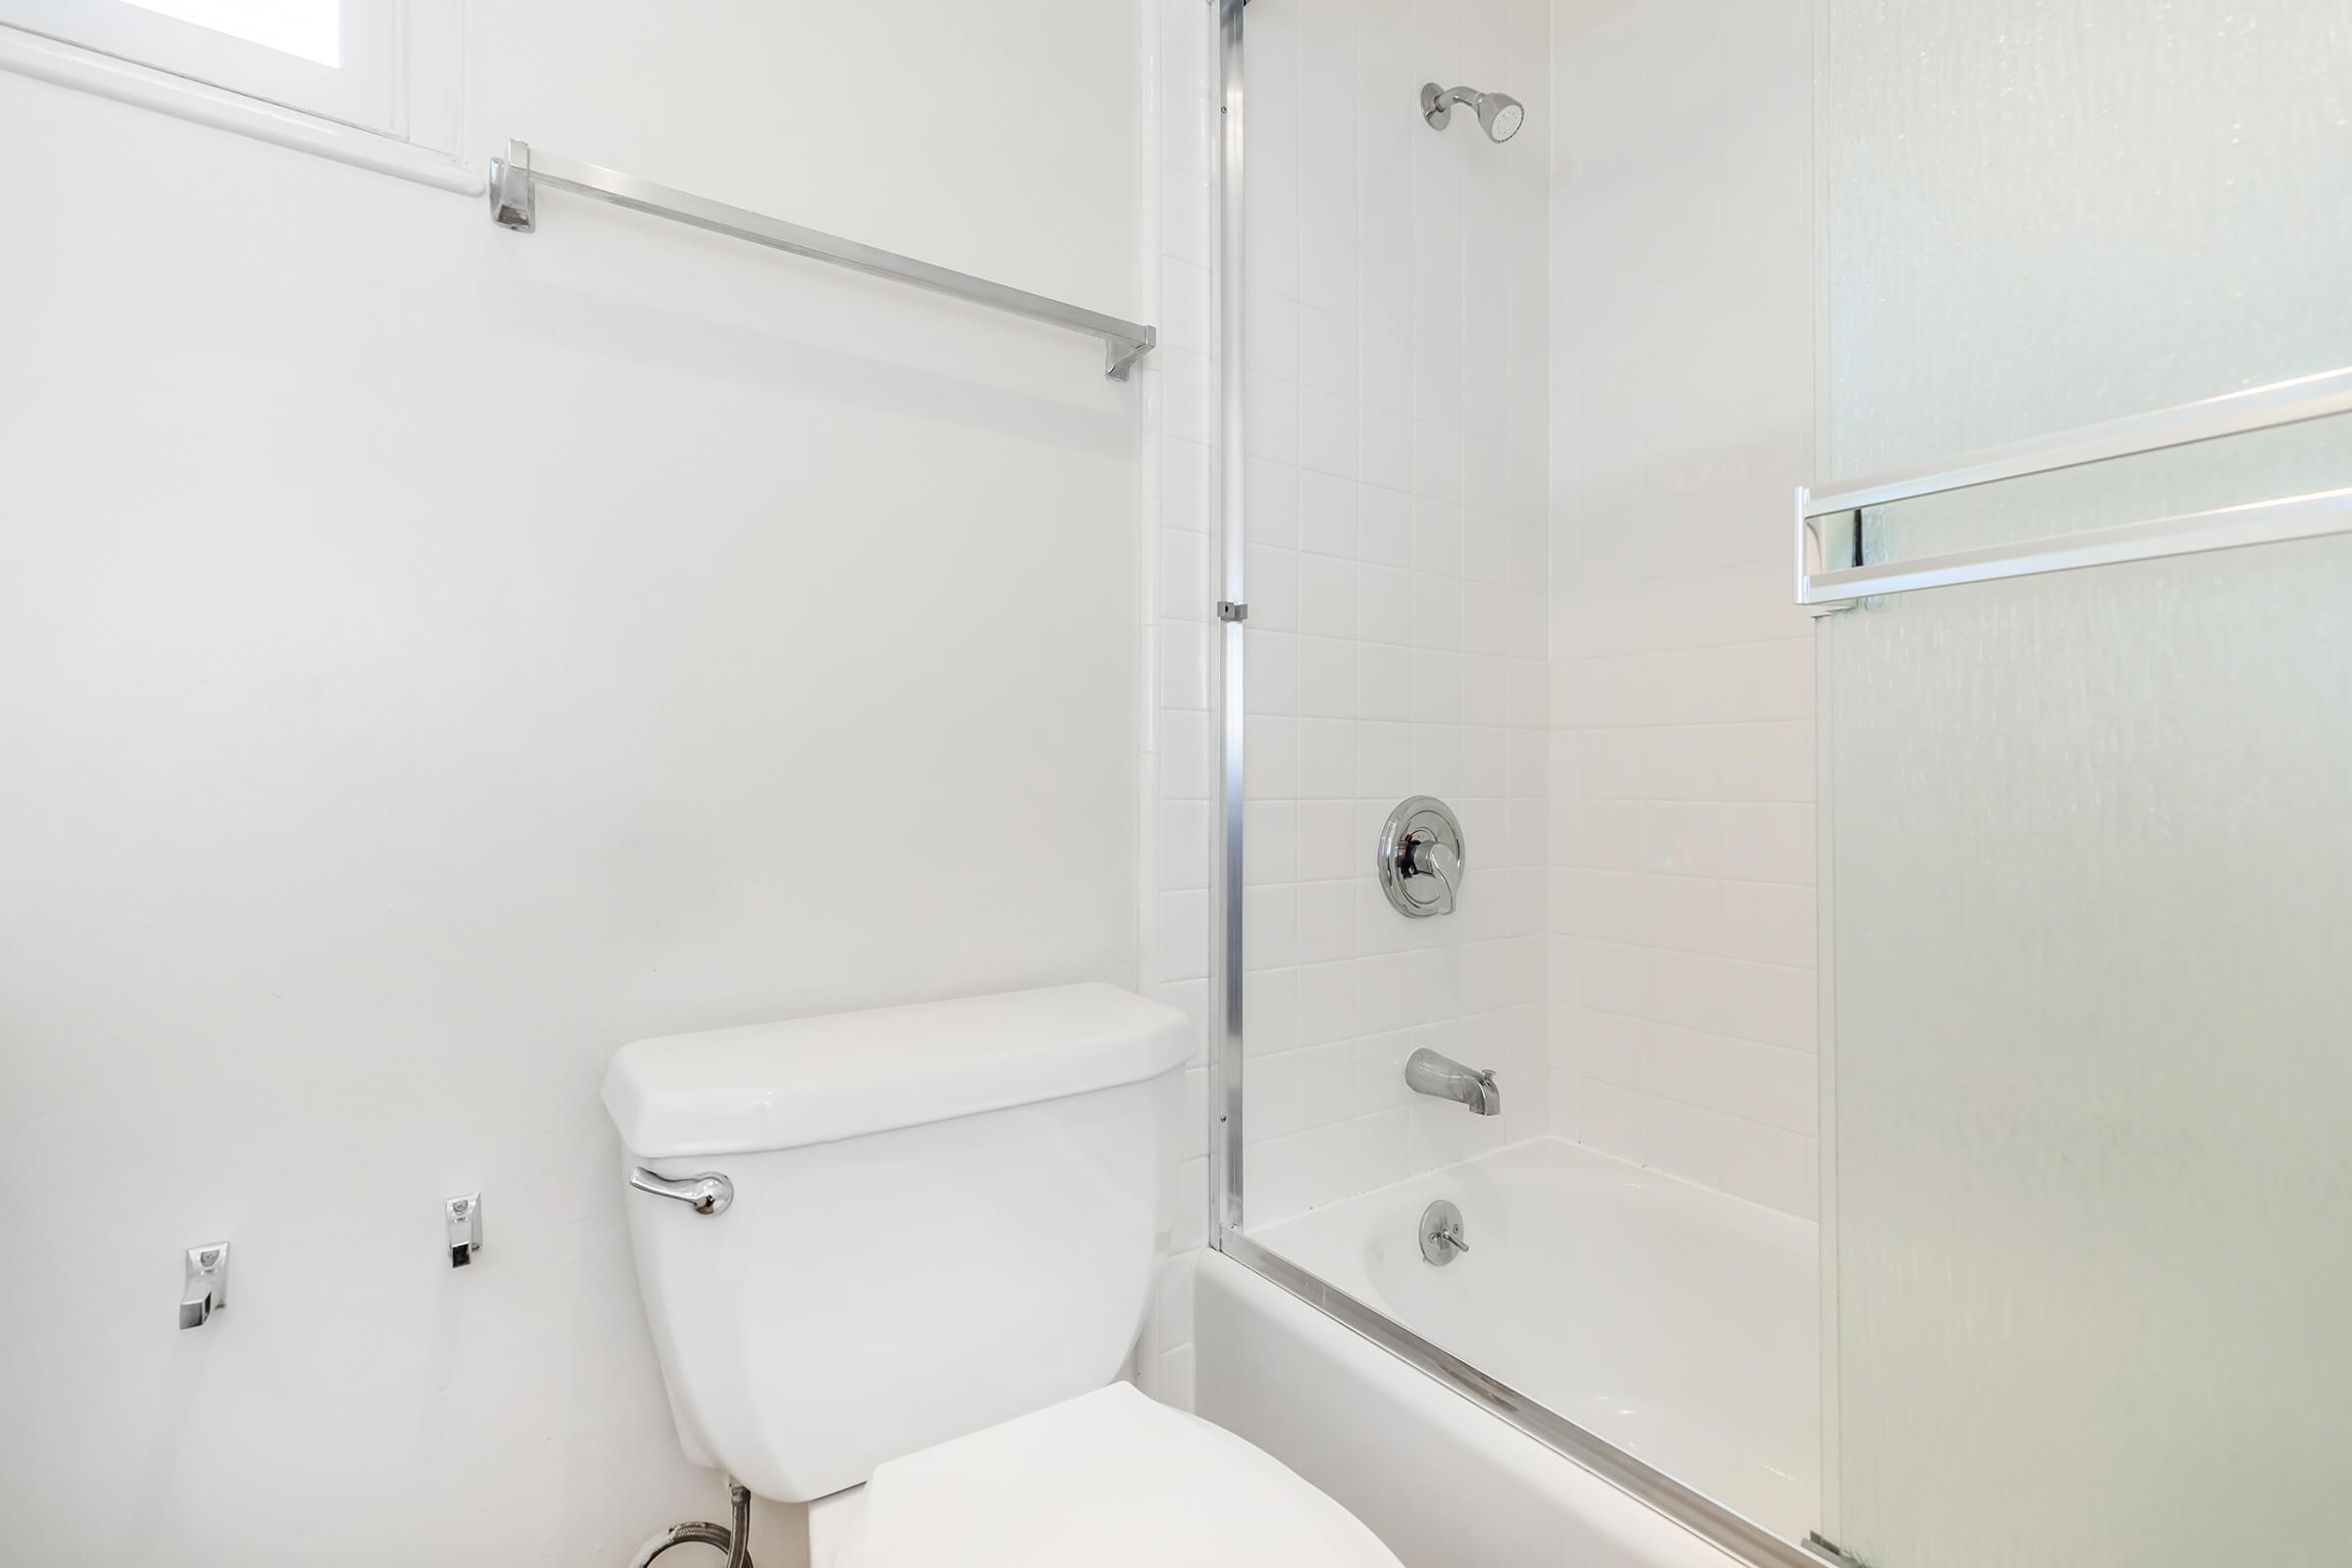 Bathroom with glass shower doors